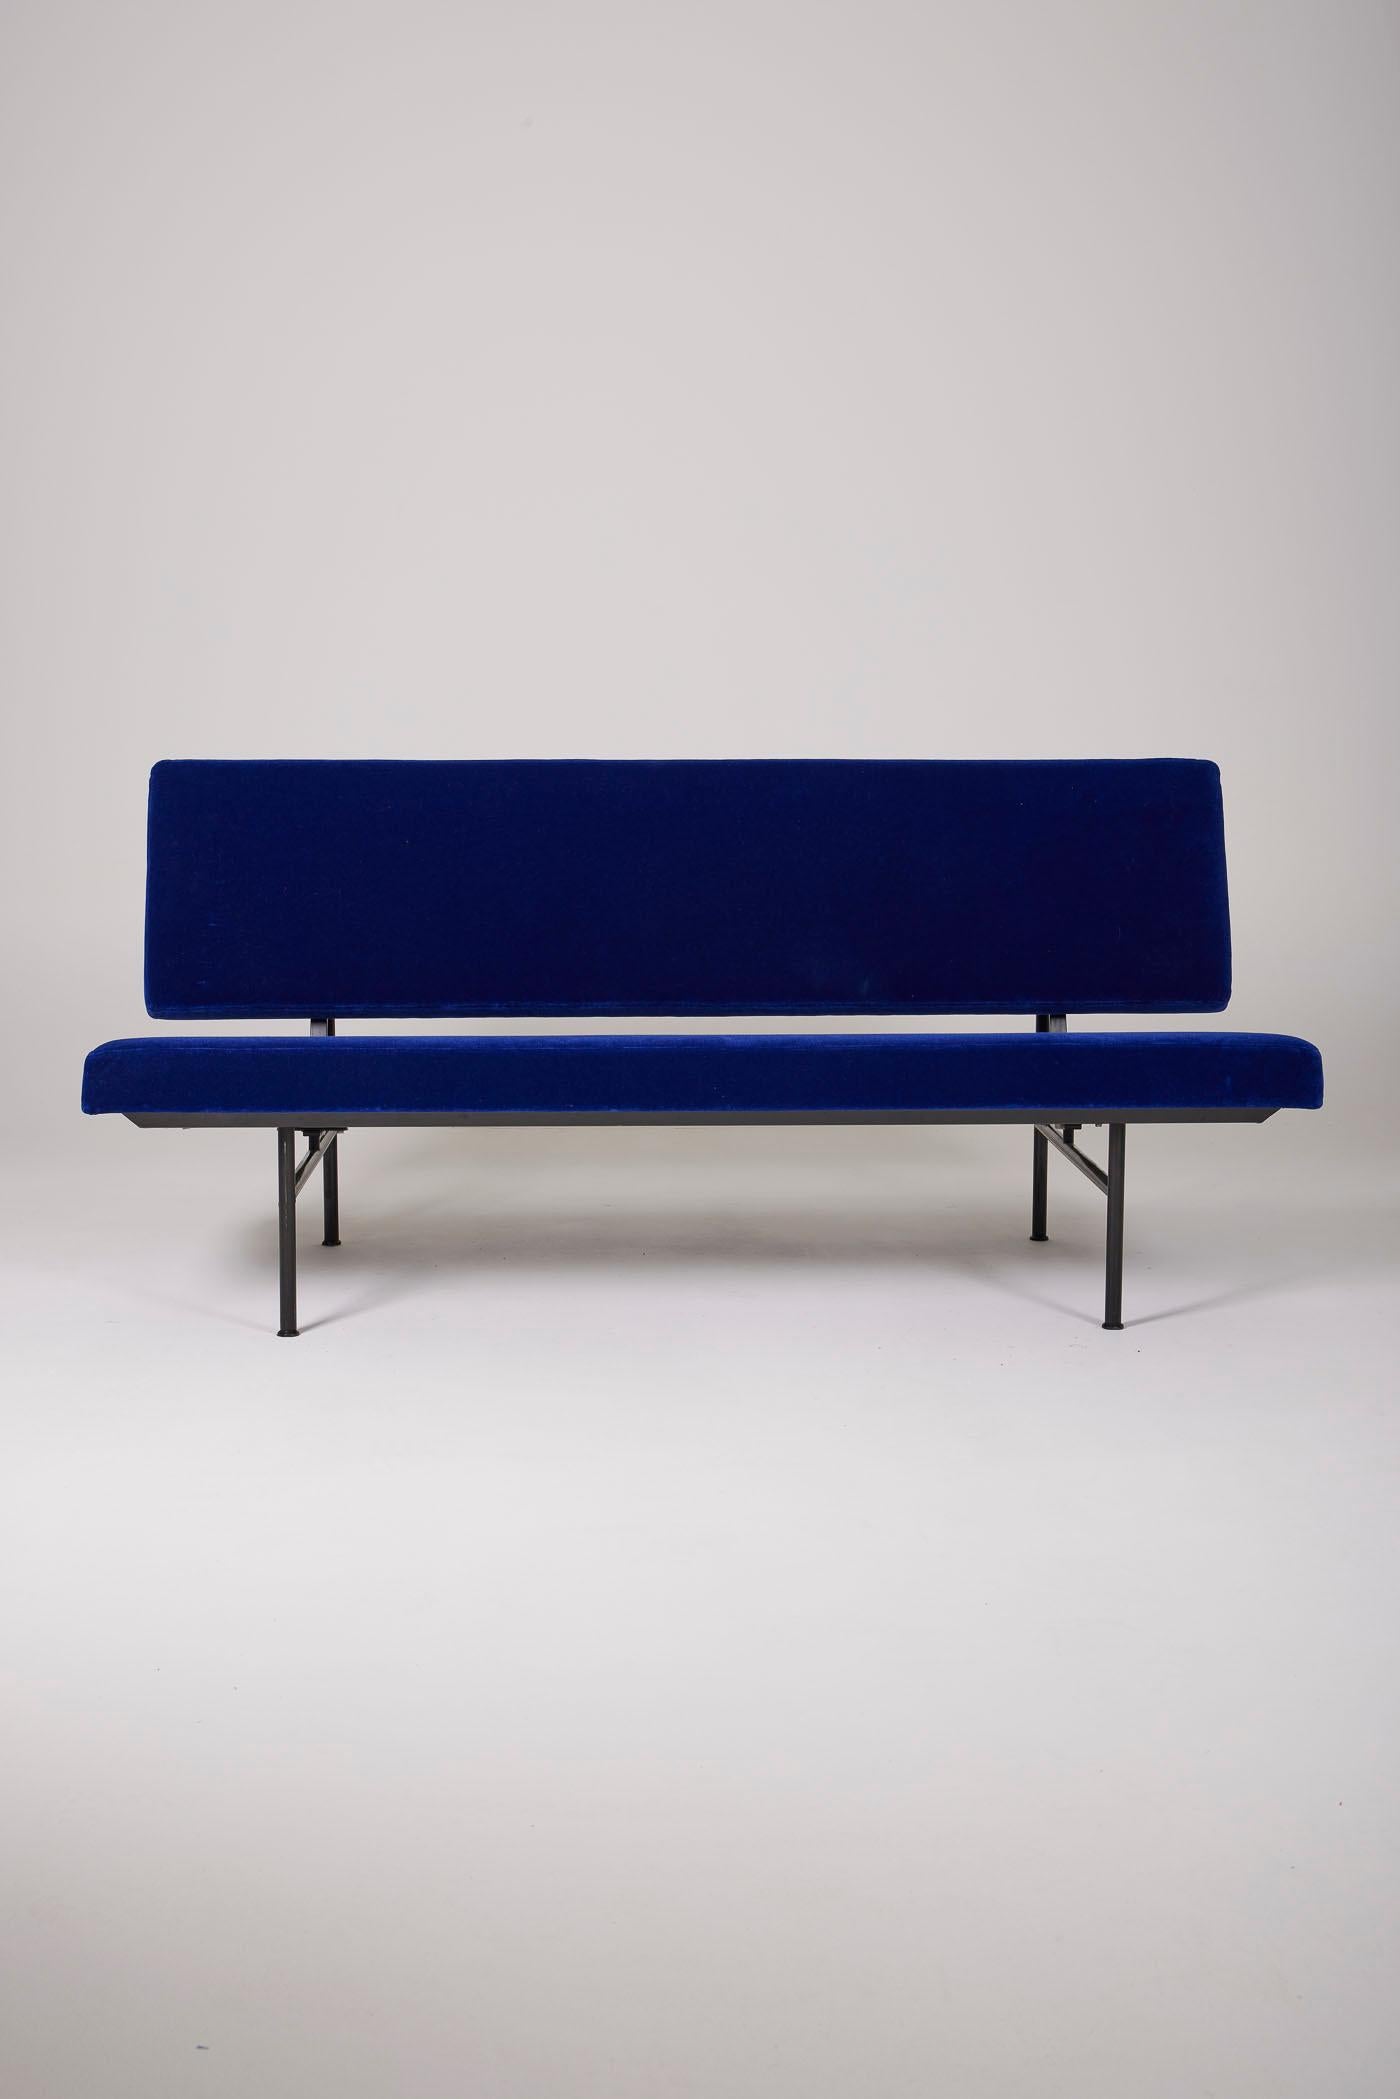 2-sitziges Sofa des Designers André Robert Cordemeyer für Gispen, aus den 1960er Jahren. Der Rahmen ist aus schwarz lackiertem Metall. Die Rückenlehne und der Sitz wurden mit blauem Samt neu gepolstert. In perfektem Zustand.
DV376